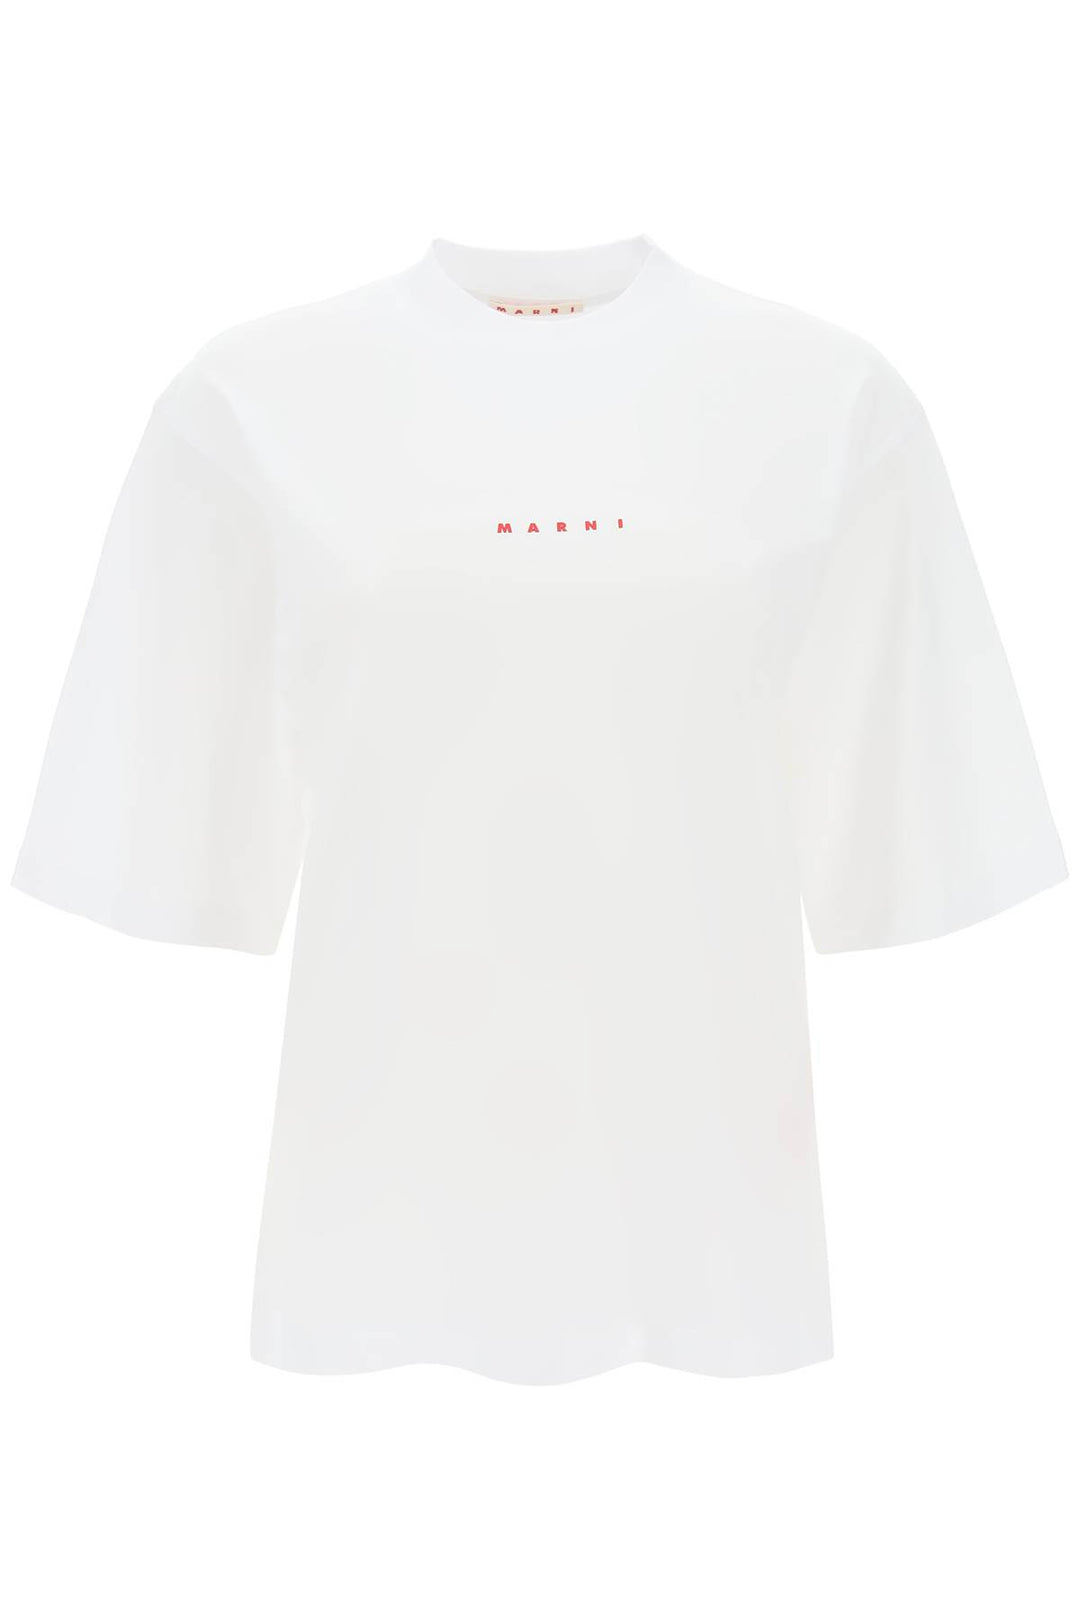 T Shirt In Cotone Organico - Marni - Donna